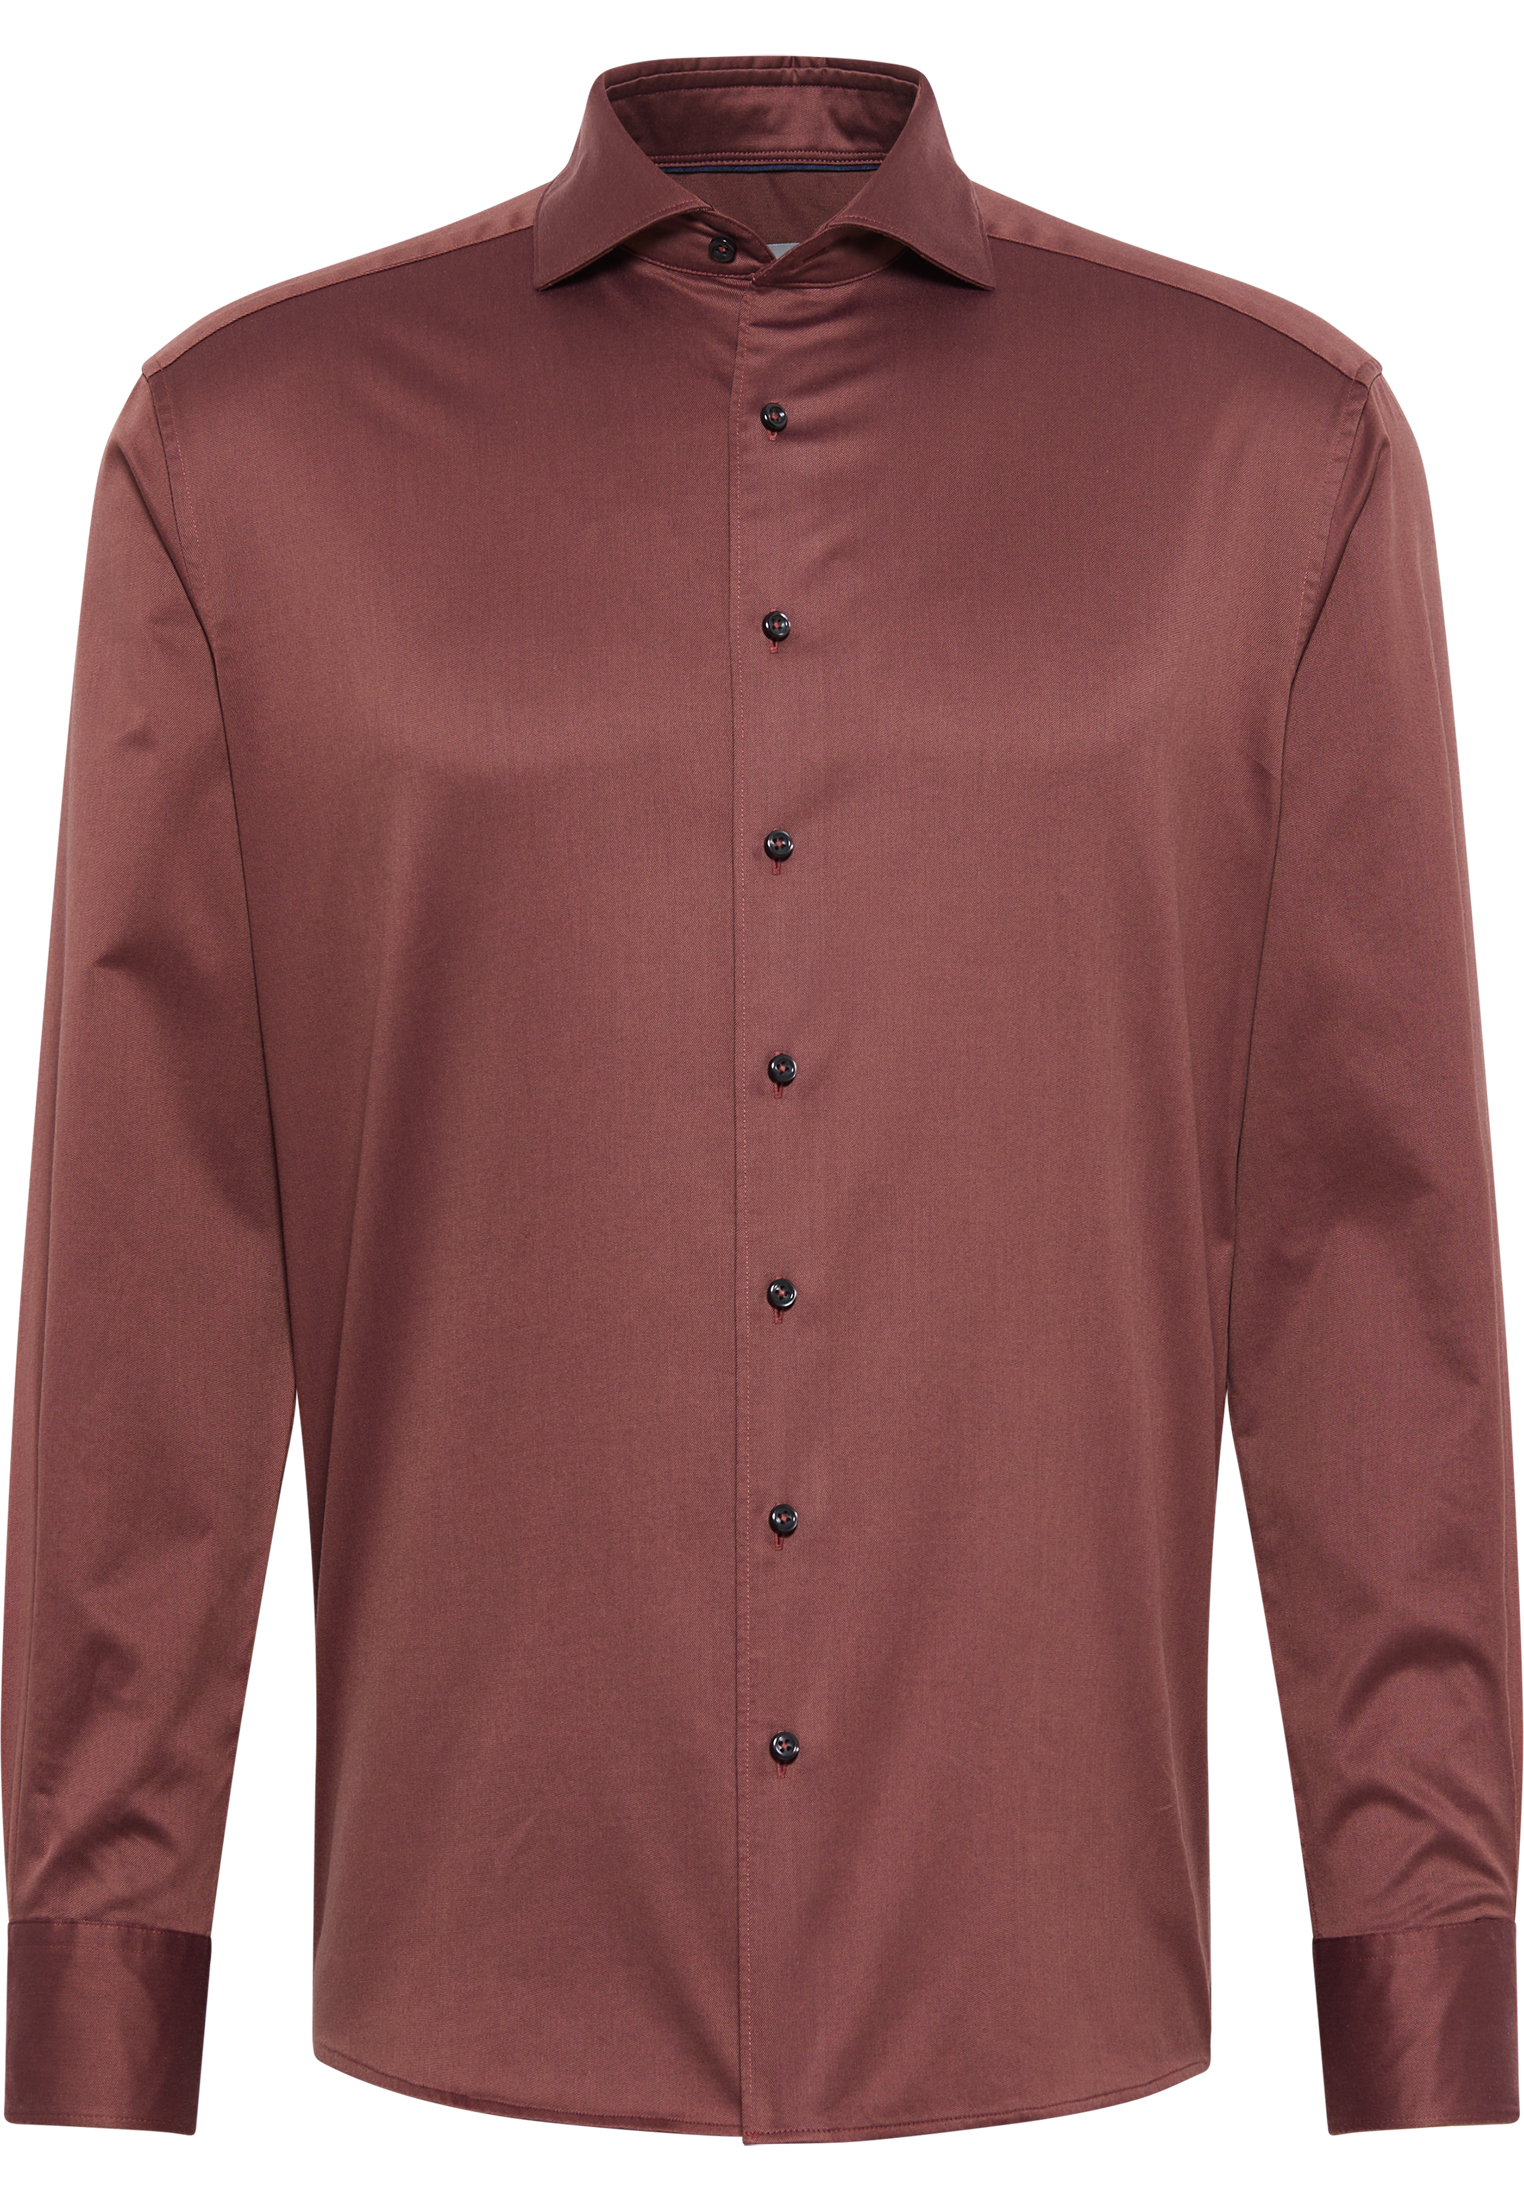 MODERN FIT Soft Luxury Shirt in aubergine vlakte